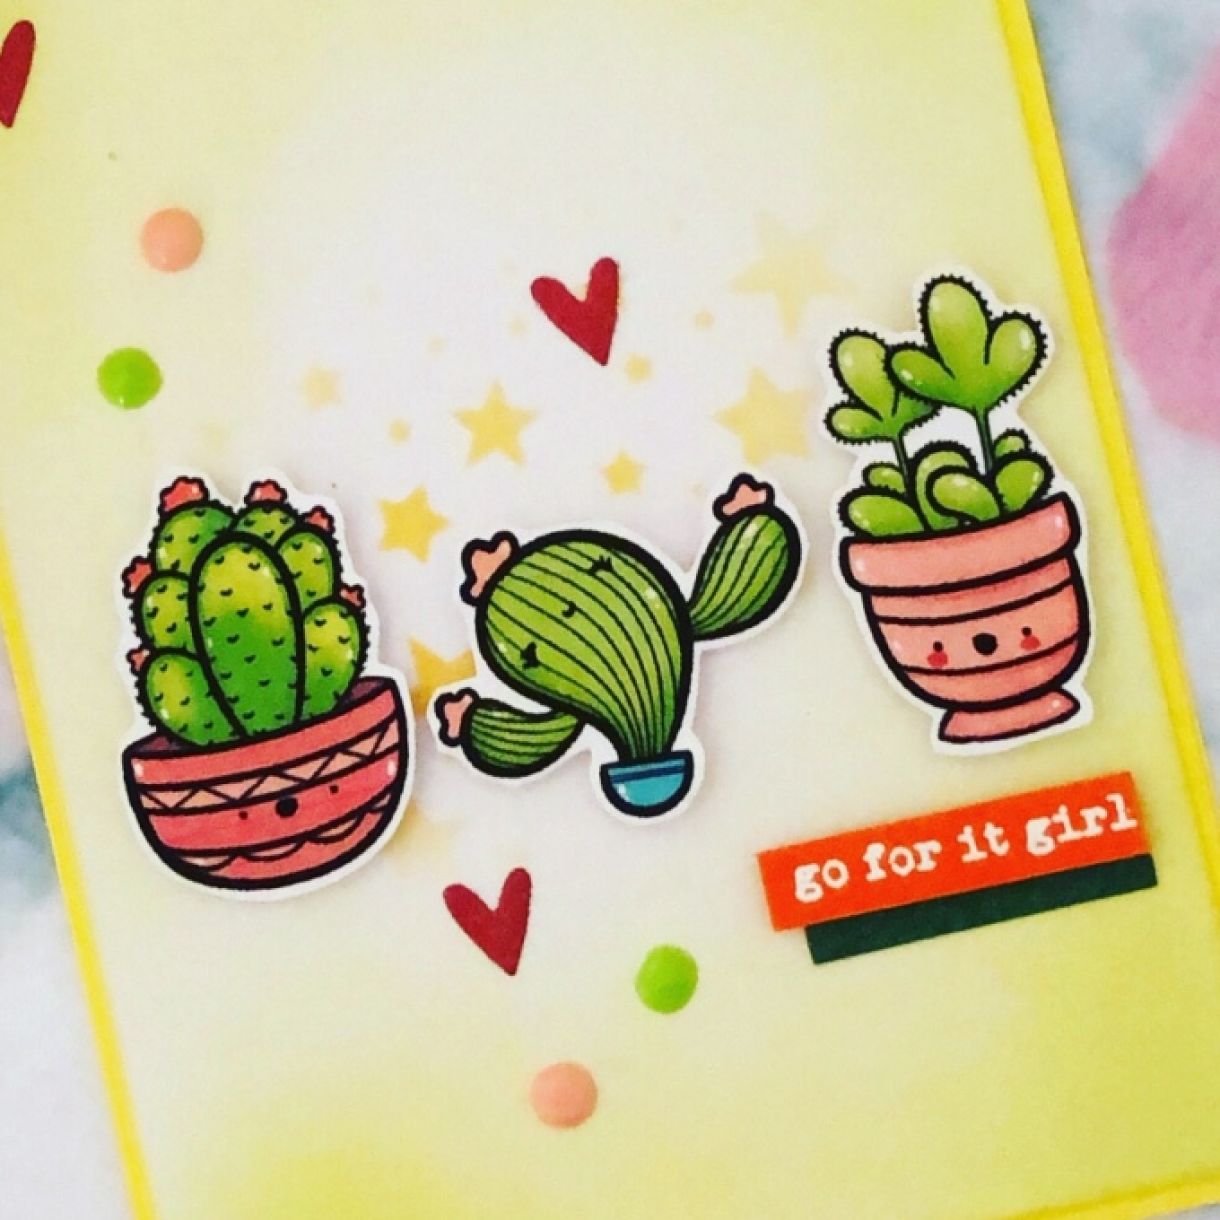 Cactus1